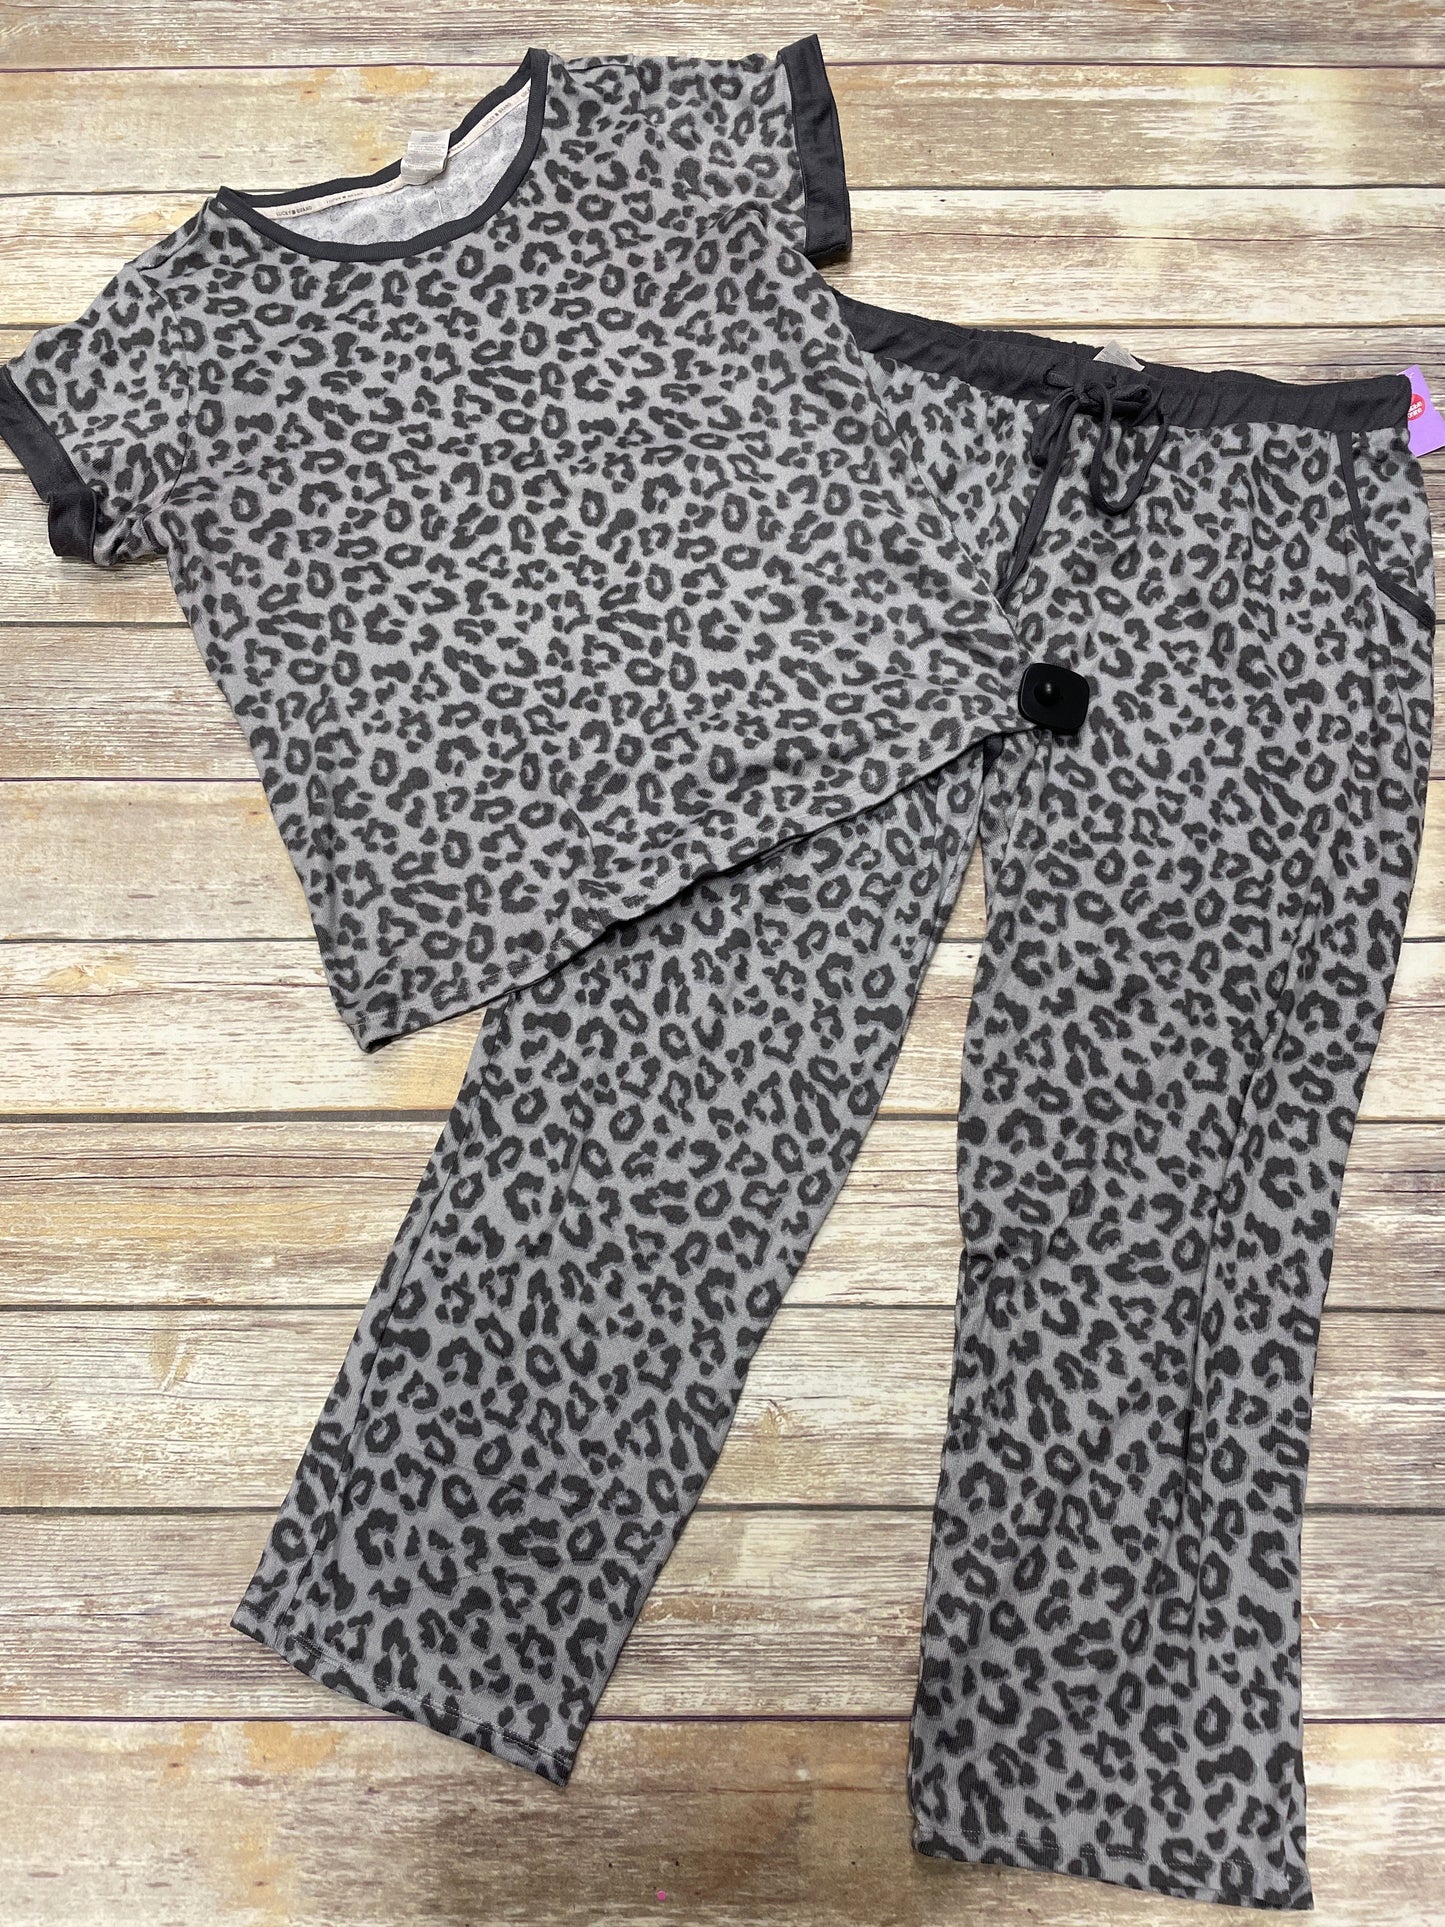 Animal Print Pajamas 2pc Lucky Brand, Size L